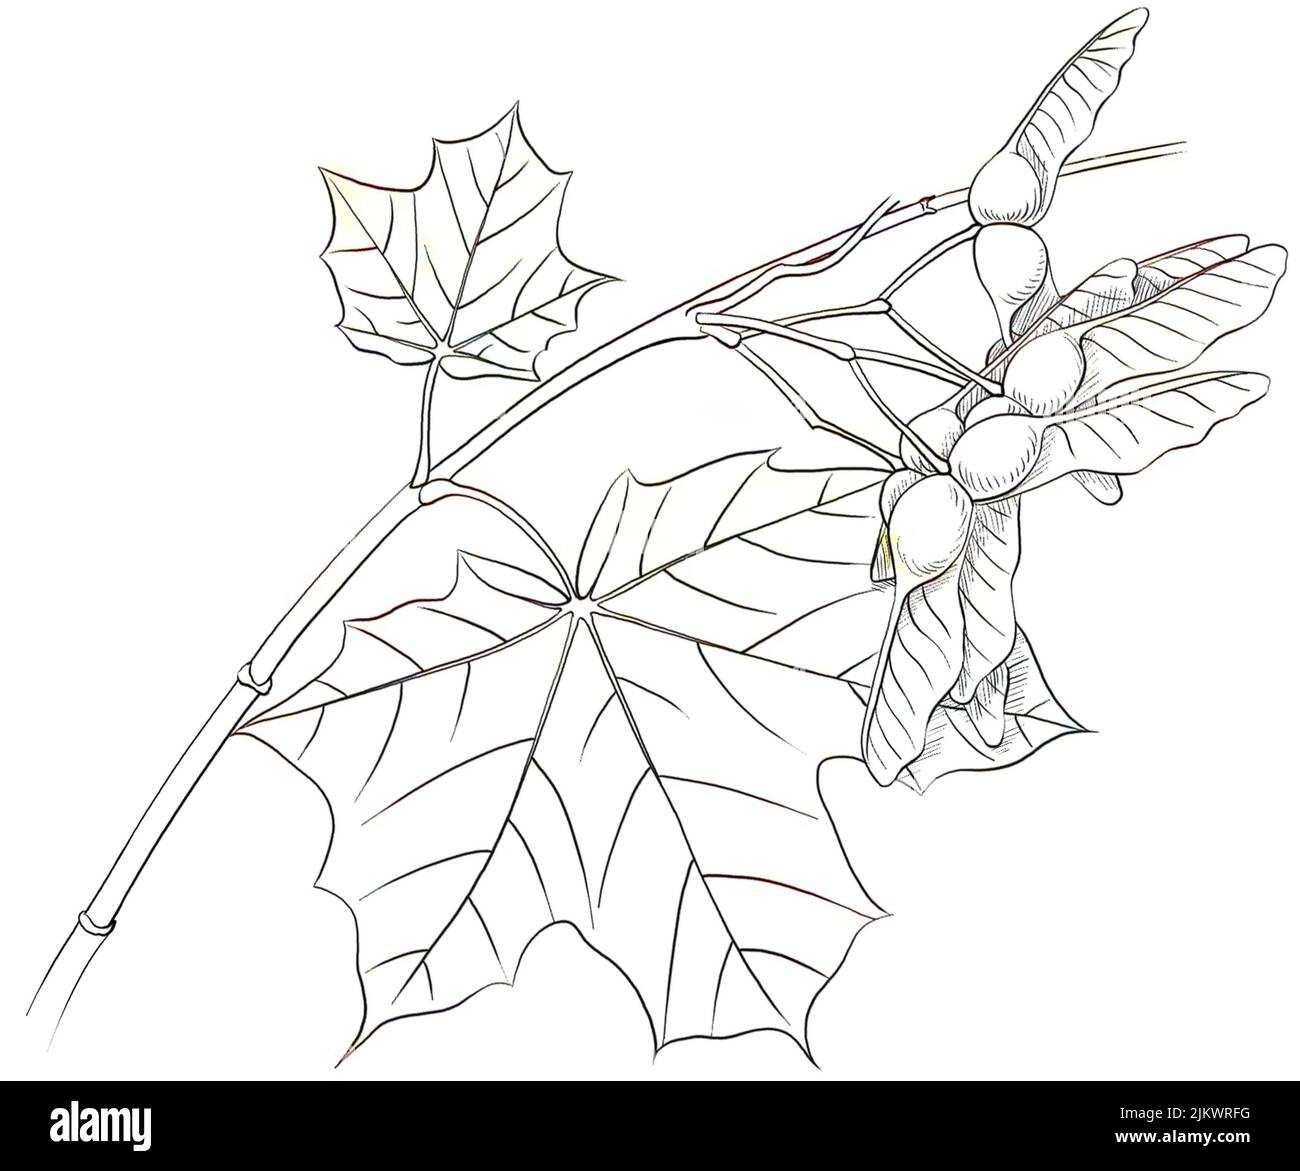 Blätter und Früchte (Disamares) des plane Ahorns (Acer platinoïdes). Stockfoto